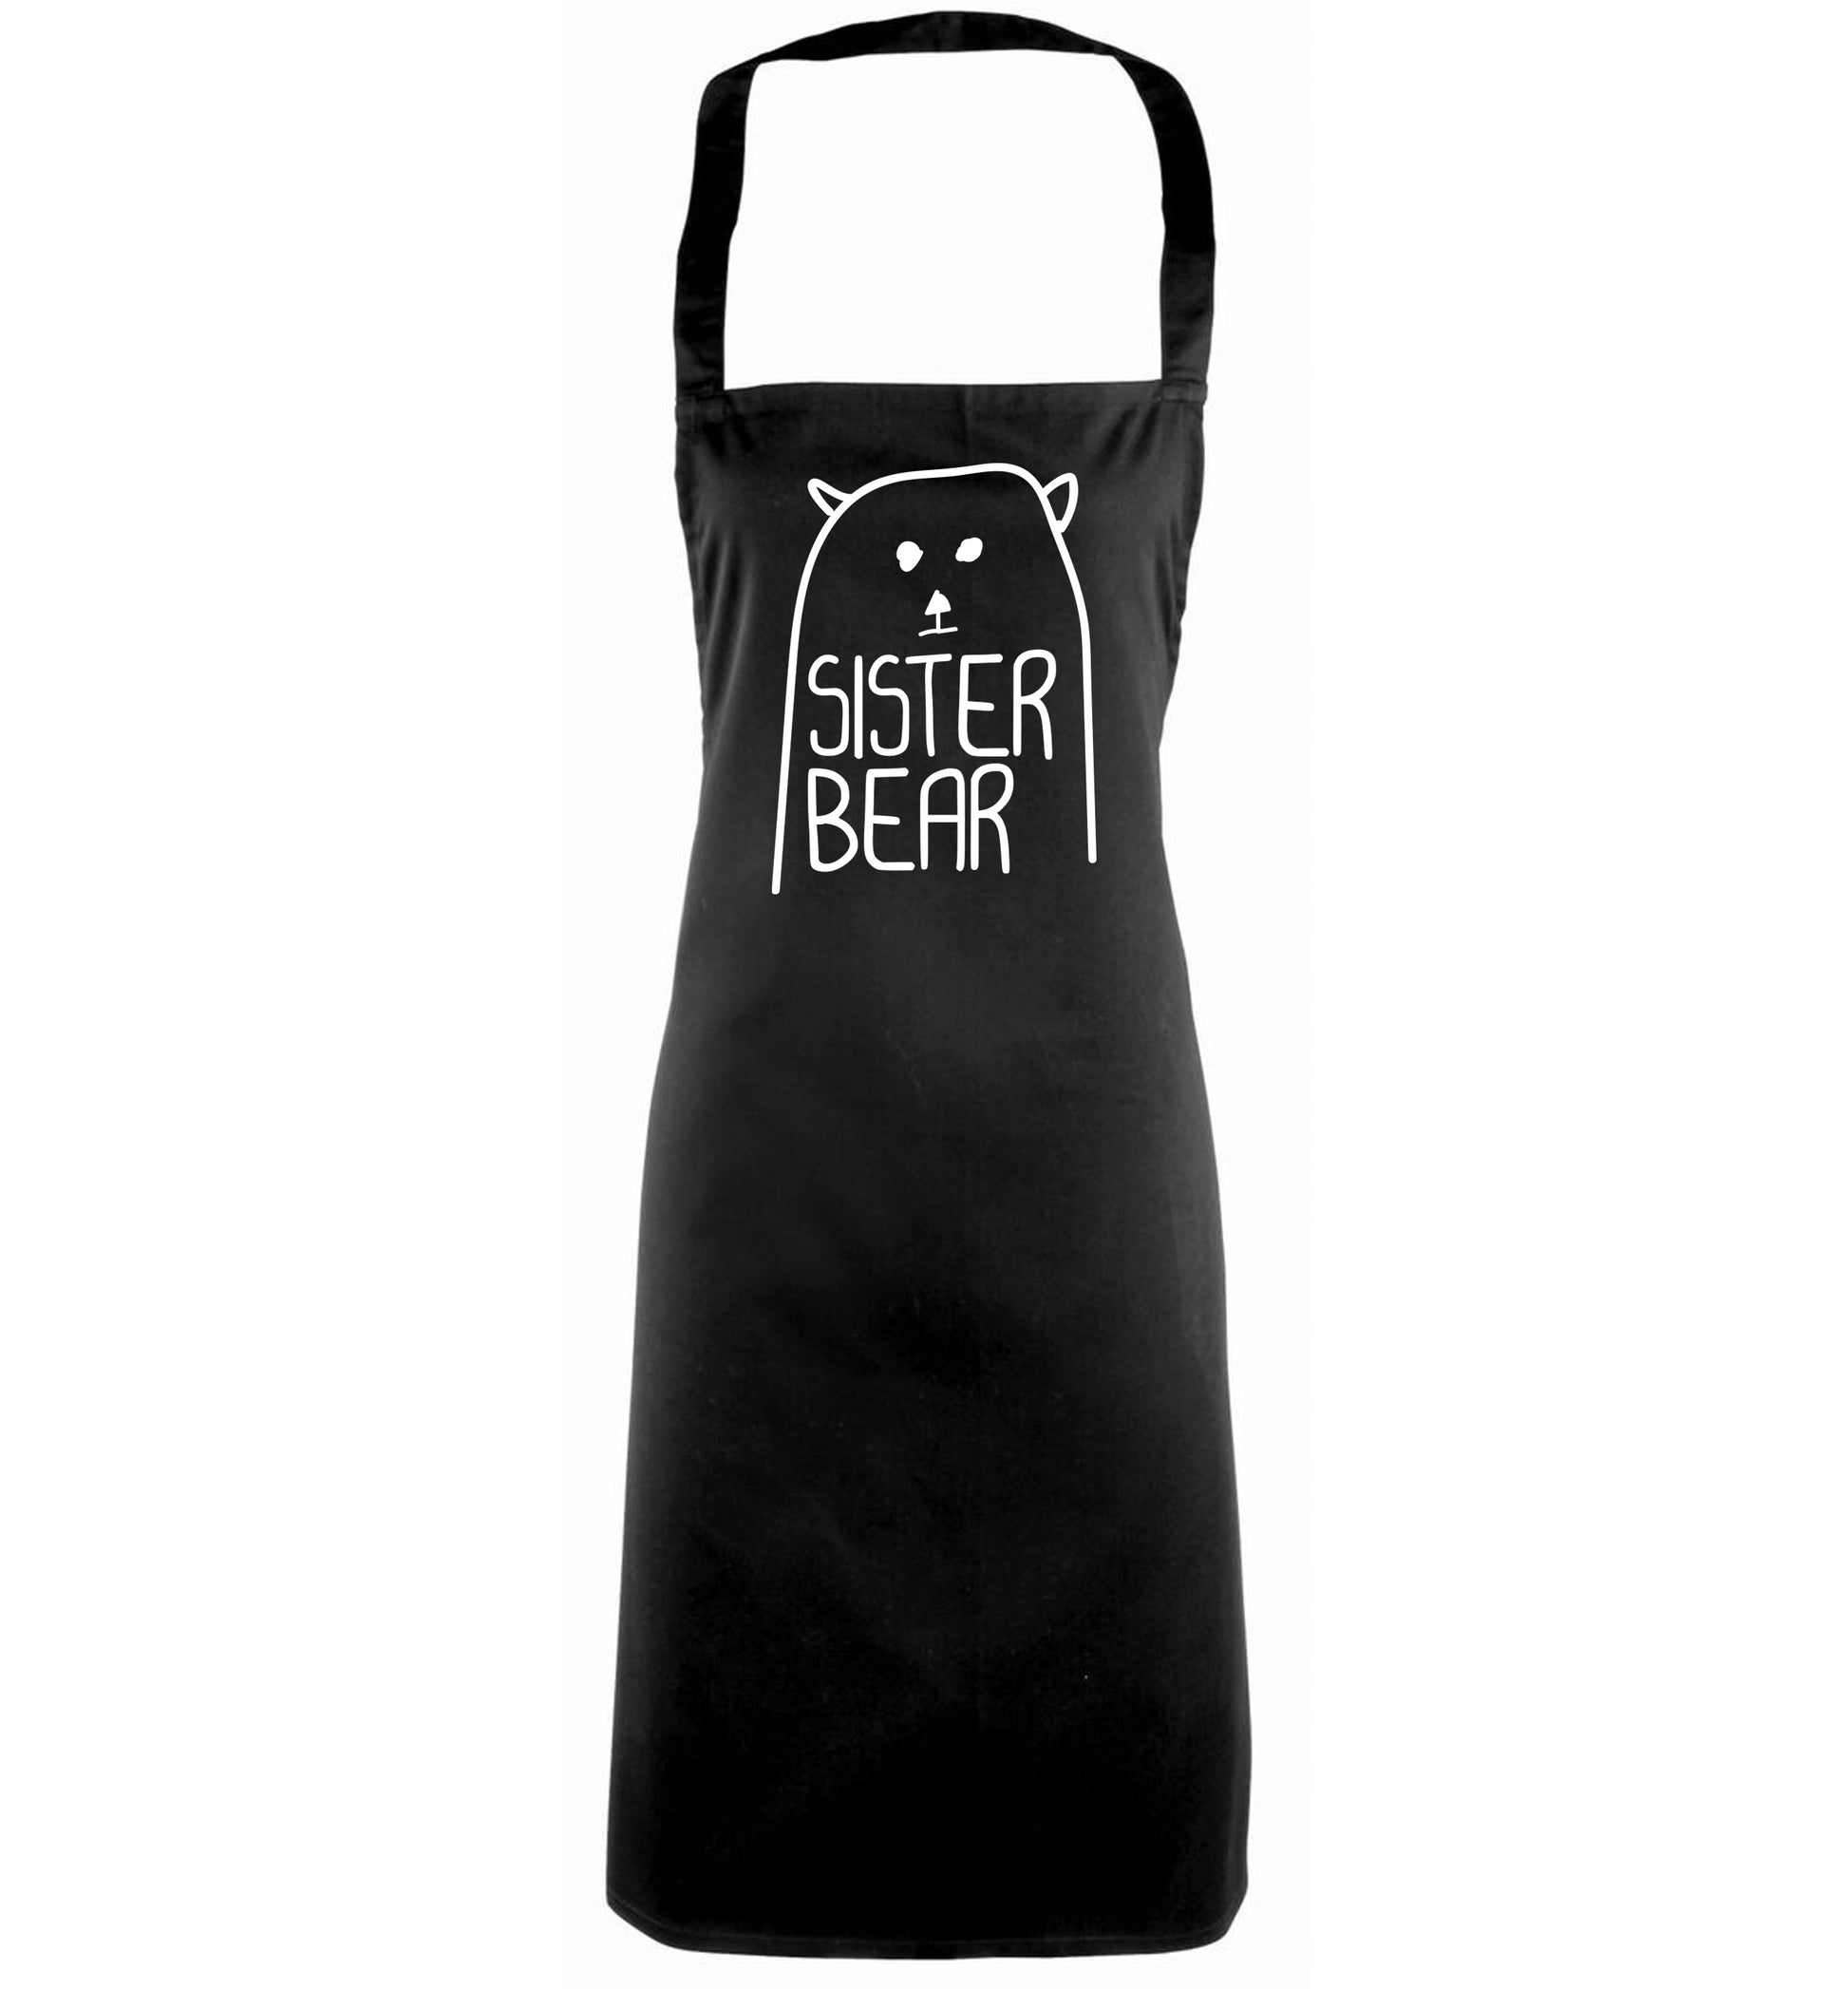 Sister bear black apron